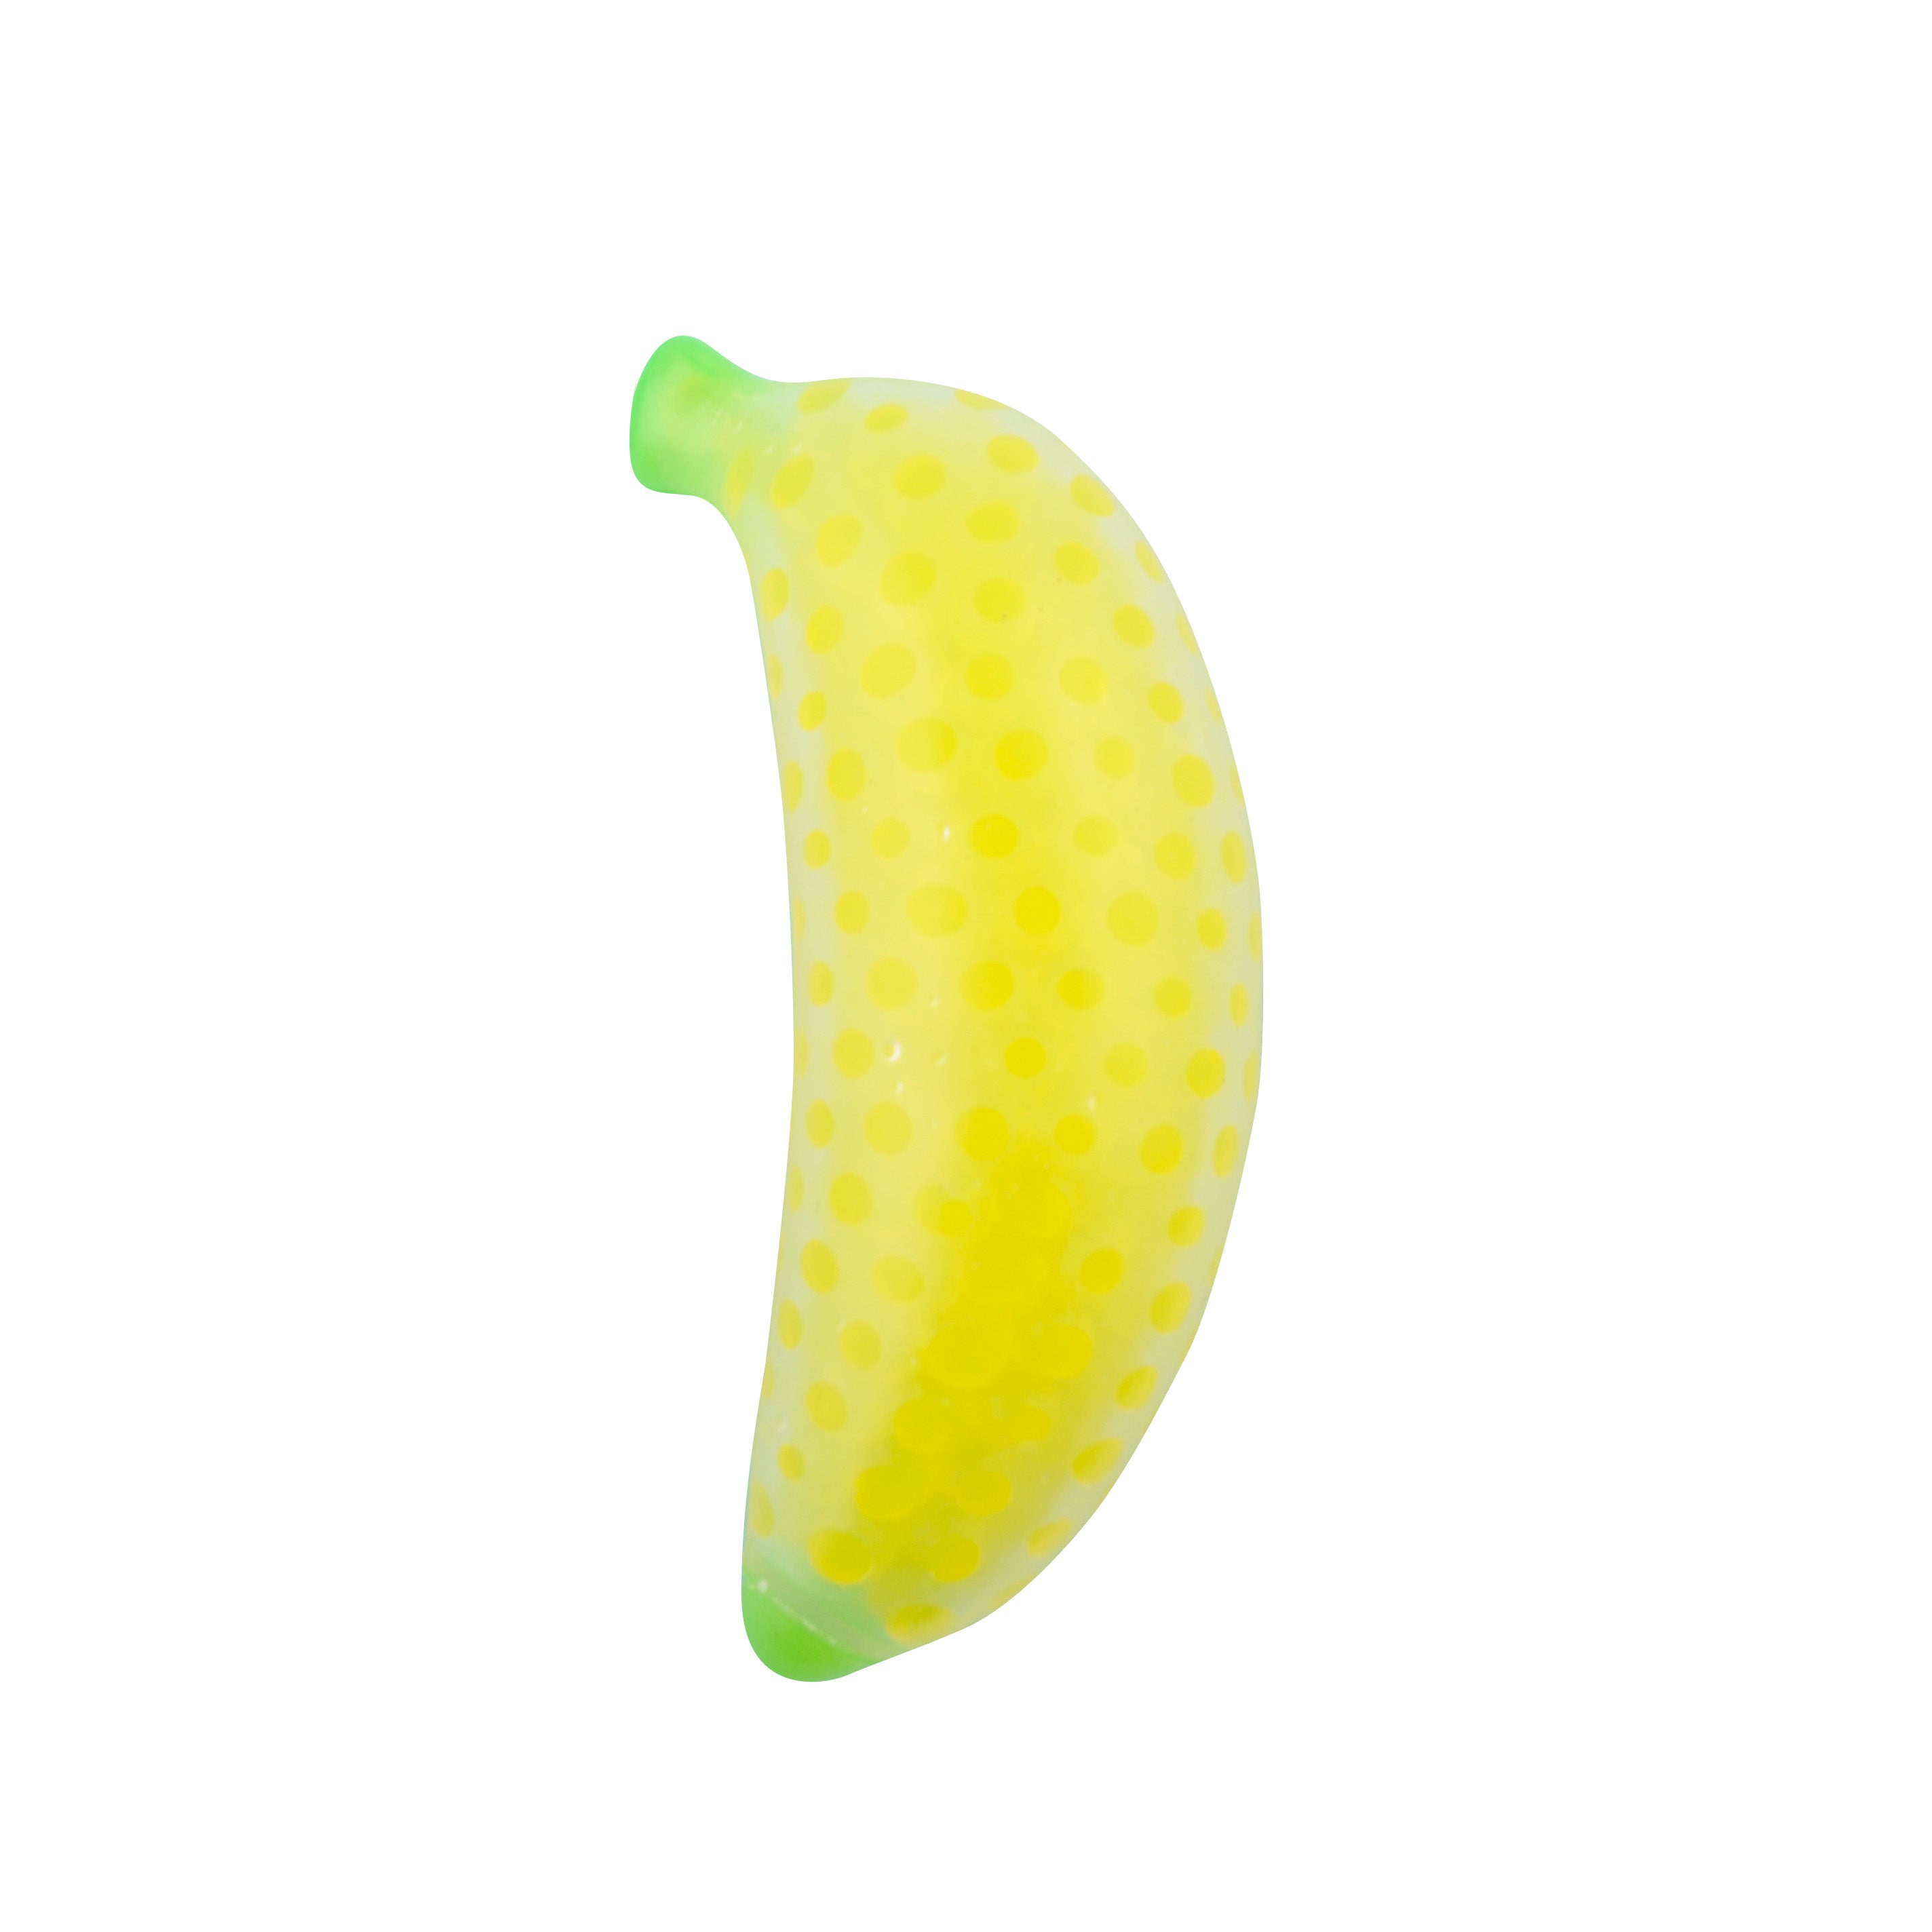 Squishy Bead Banana - YELLOW